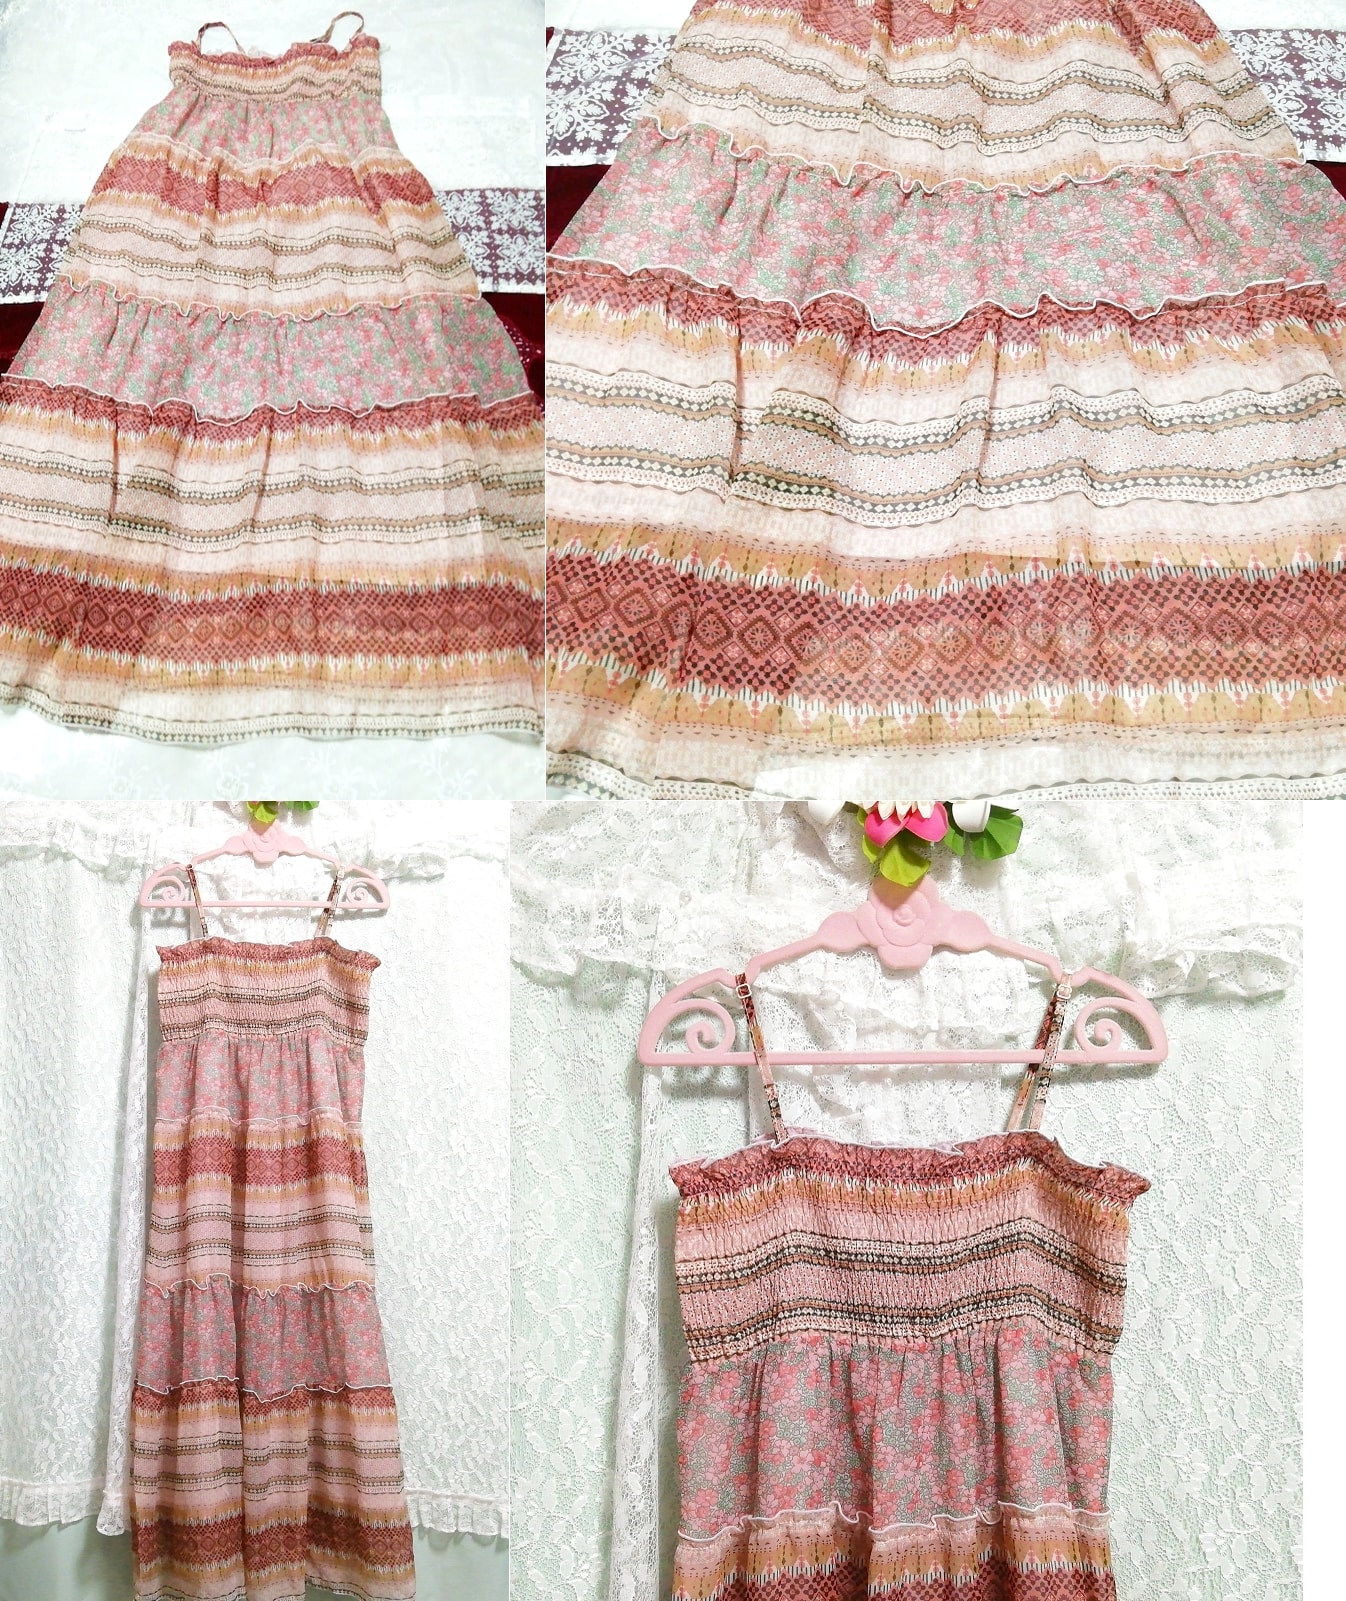 粉棕色花卉图案睡衣吊带背心超长连衣裙, 长裙, 尺寸